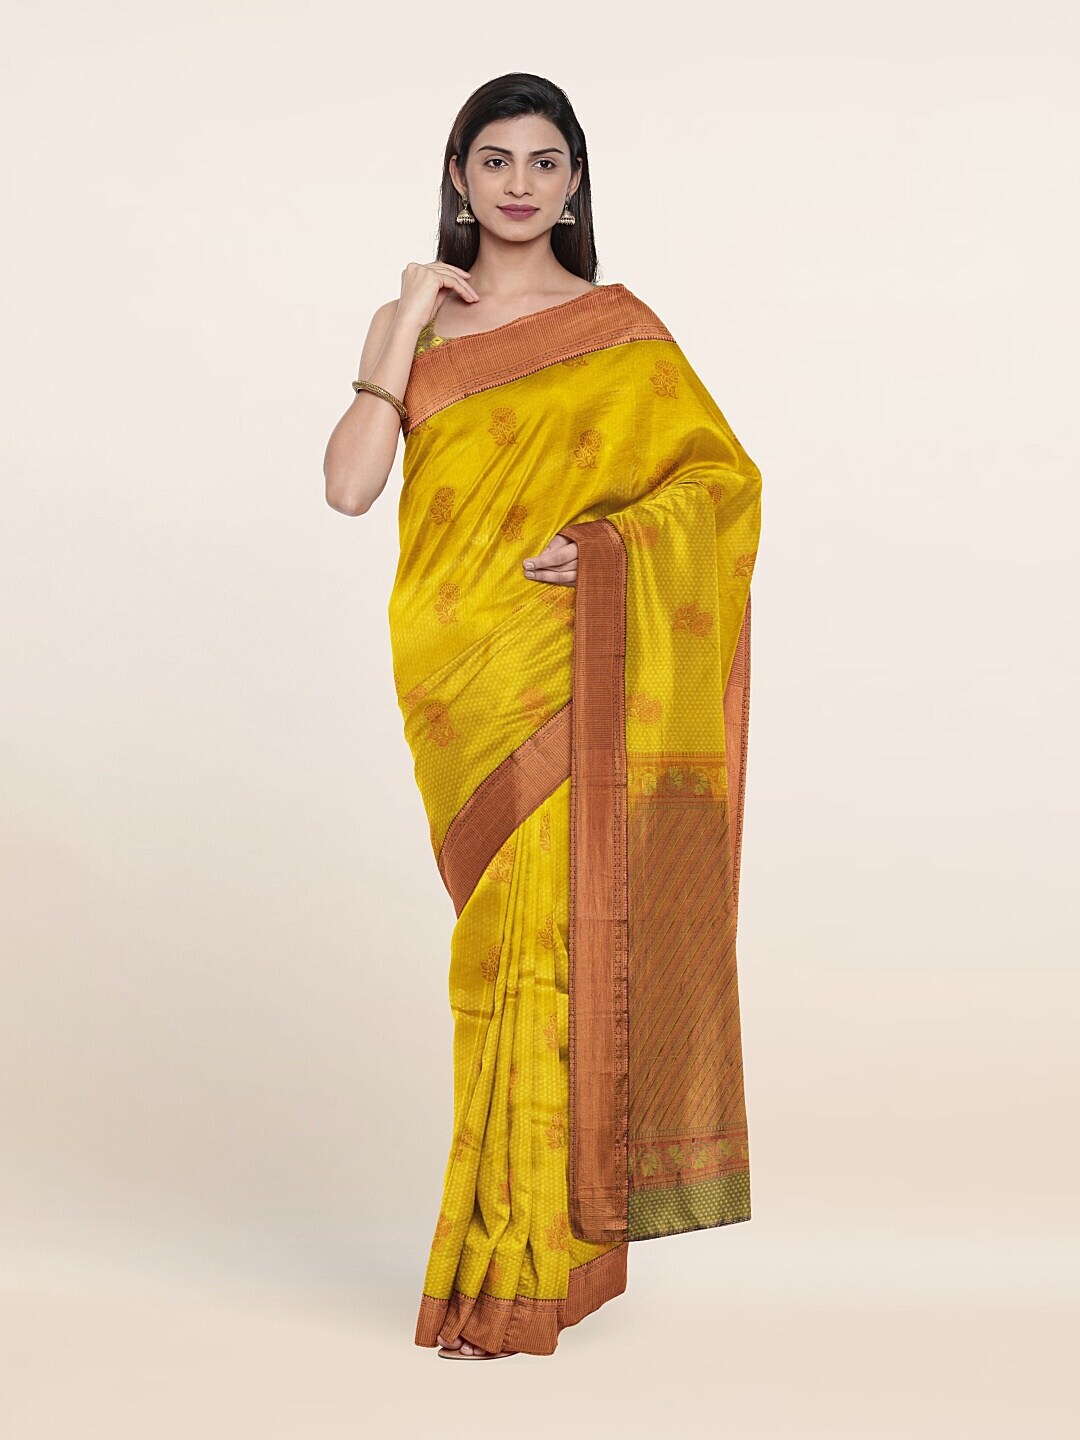 Pothys Yellow & Copper-Toned Floral Zari Pure Silk Saree Price in India